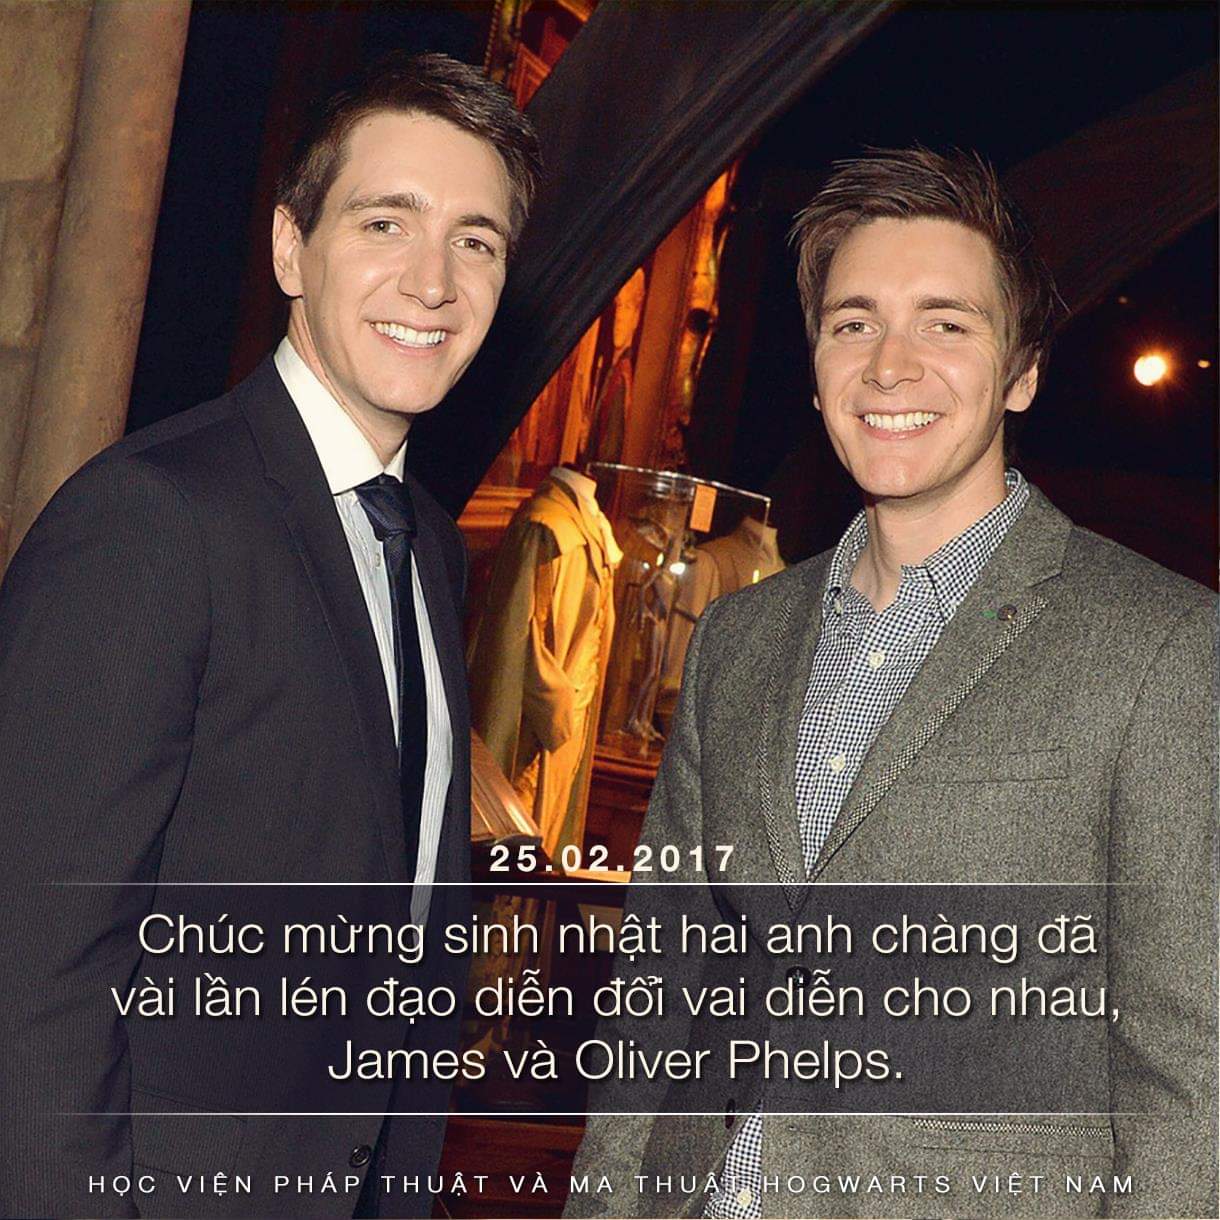 Chúc mừng sinh nhật hai anh James và Oliver Phelps!